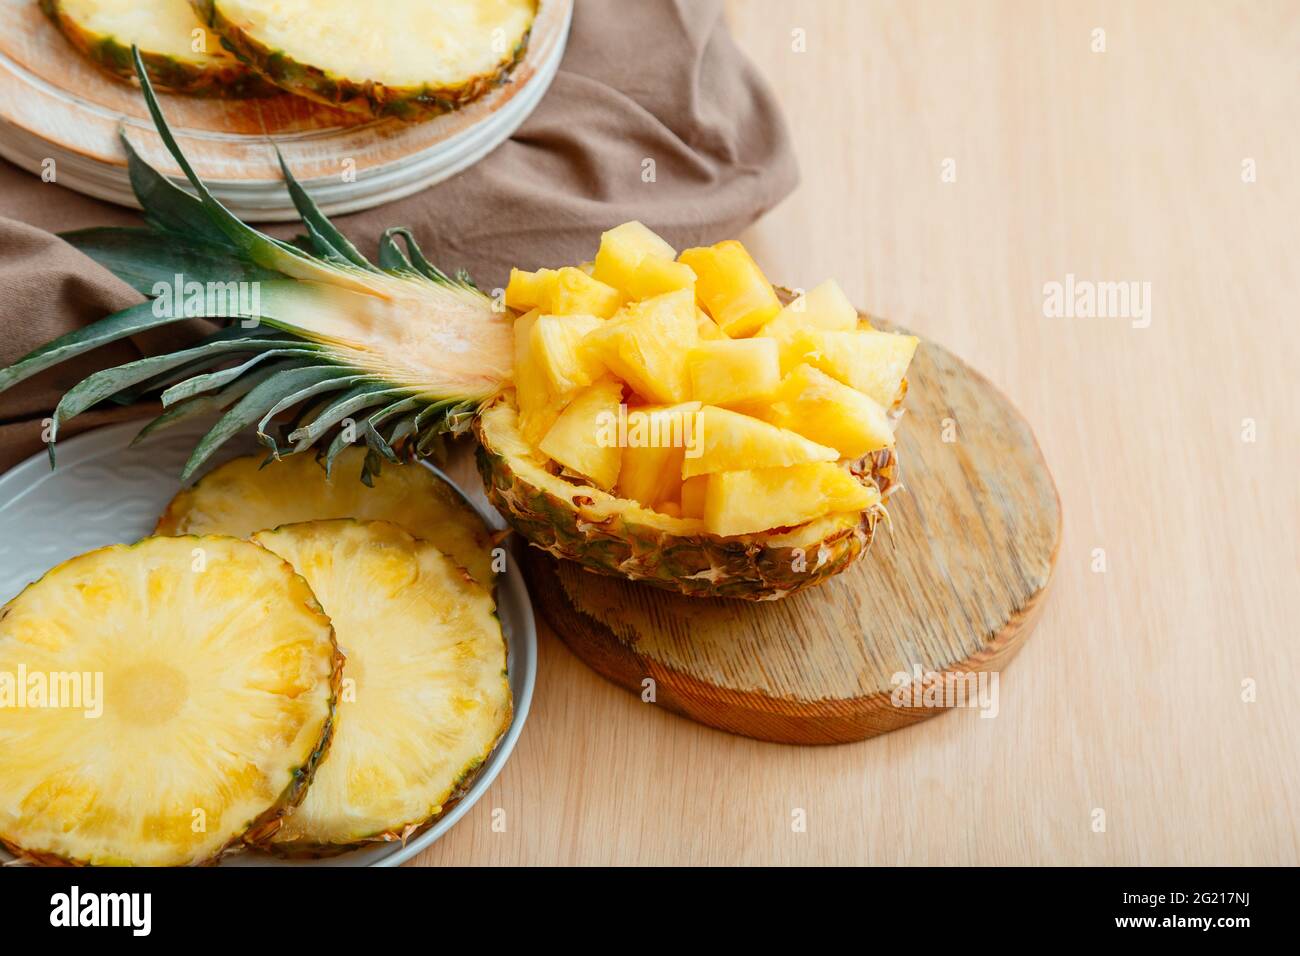 Insalata di ananas tritata in mezzo ananas. Fresco delizioso ananas tagliato a pezzi. Gustoso dessert estivo con frutta a fette di ananas e ingredienti Foto Stock